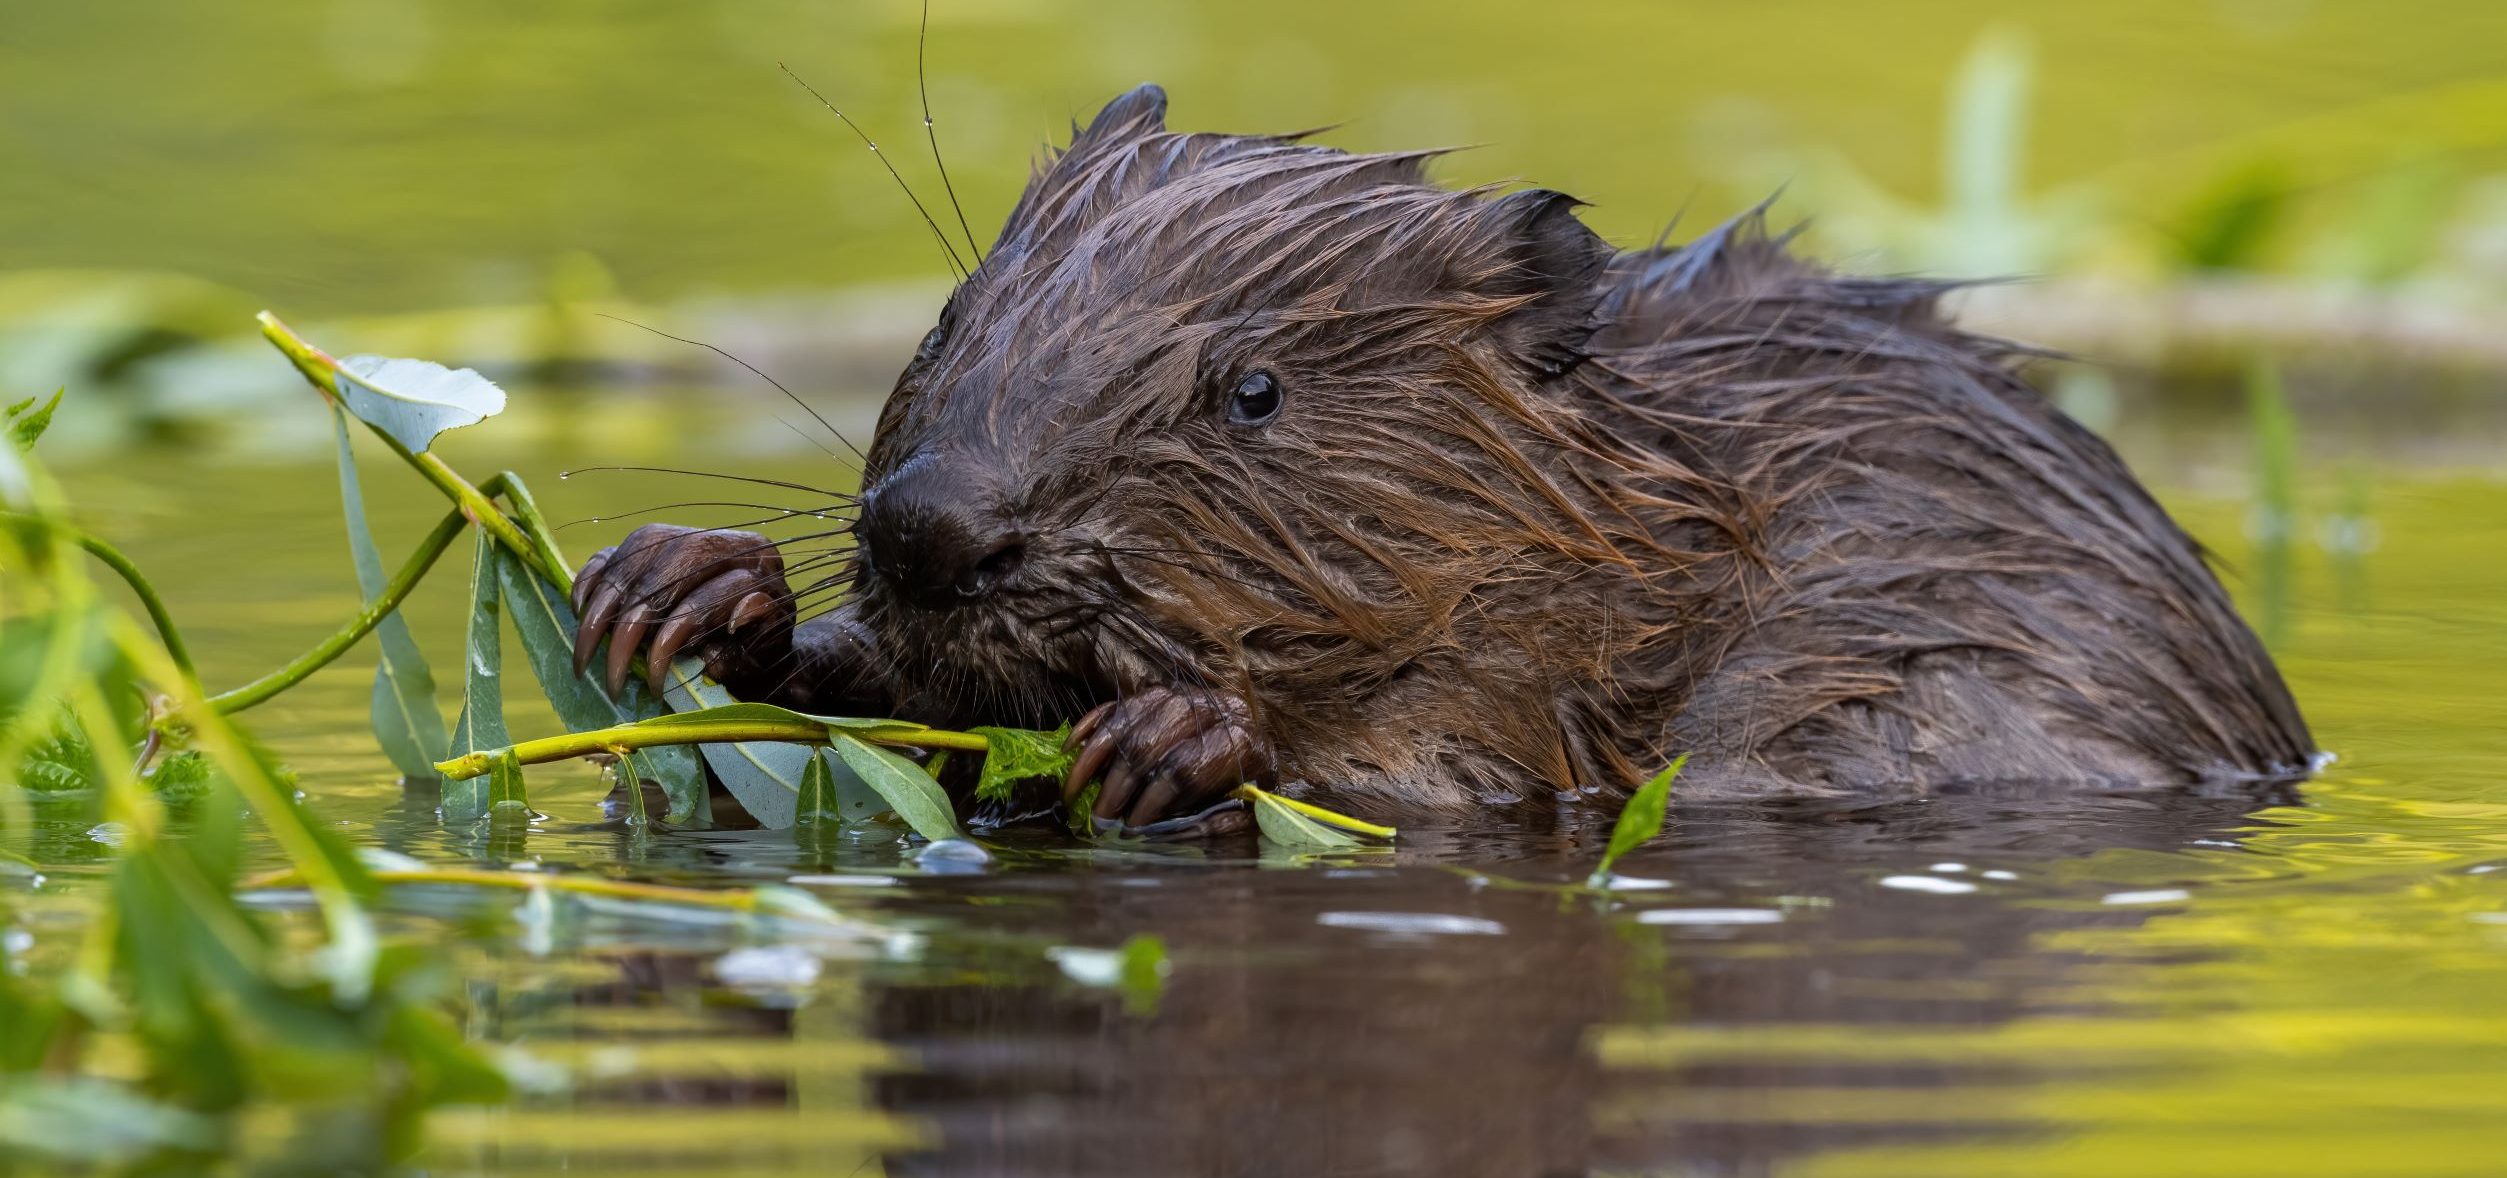 Wet Eurasian Beaver eating leaves in Summer